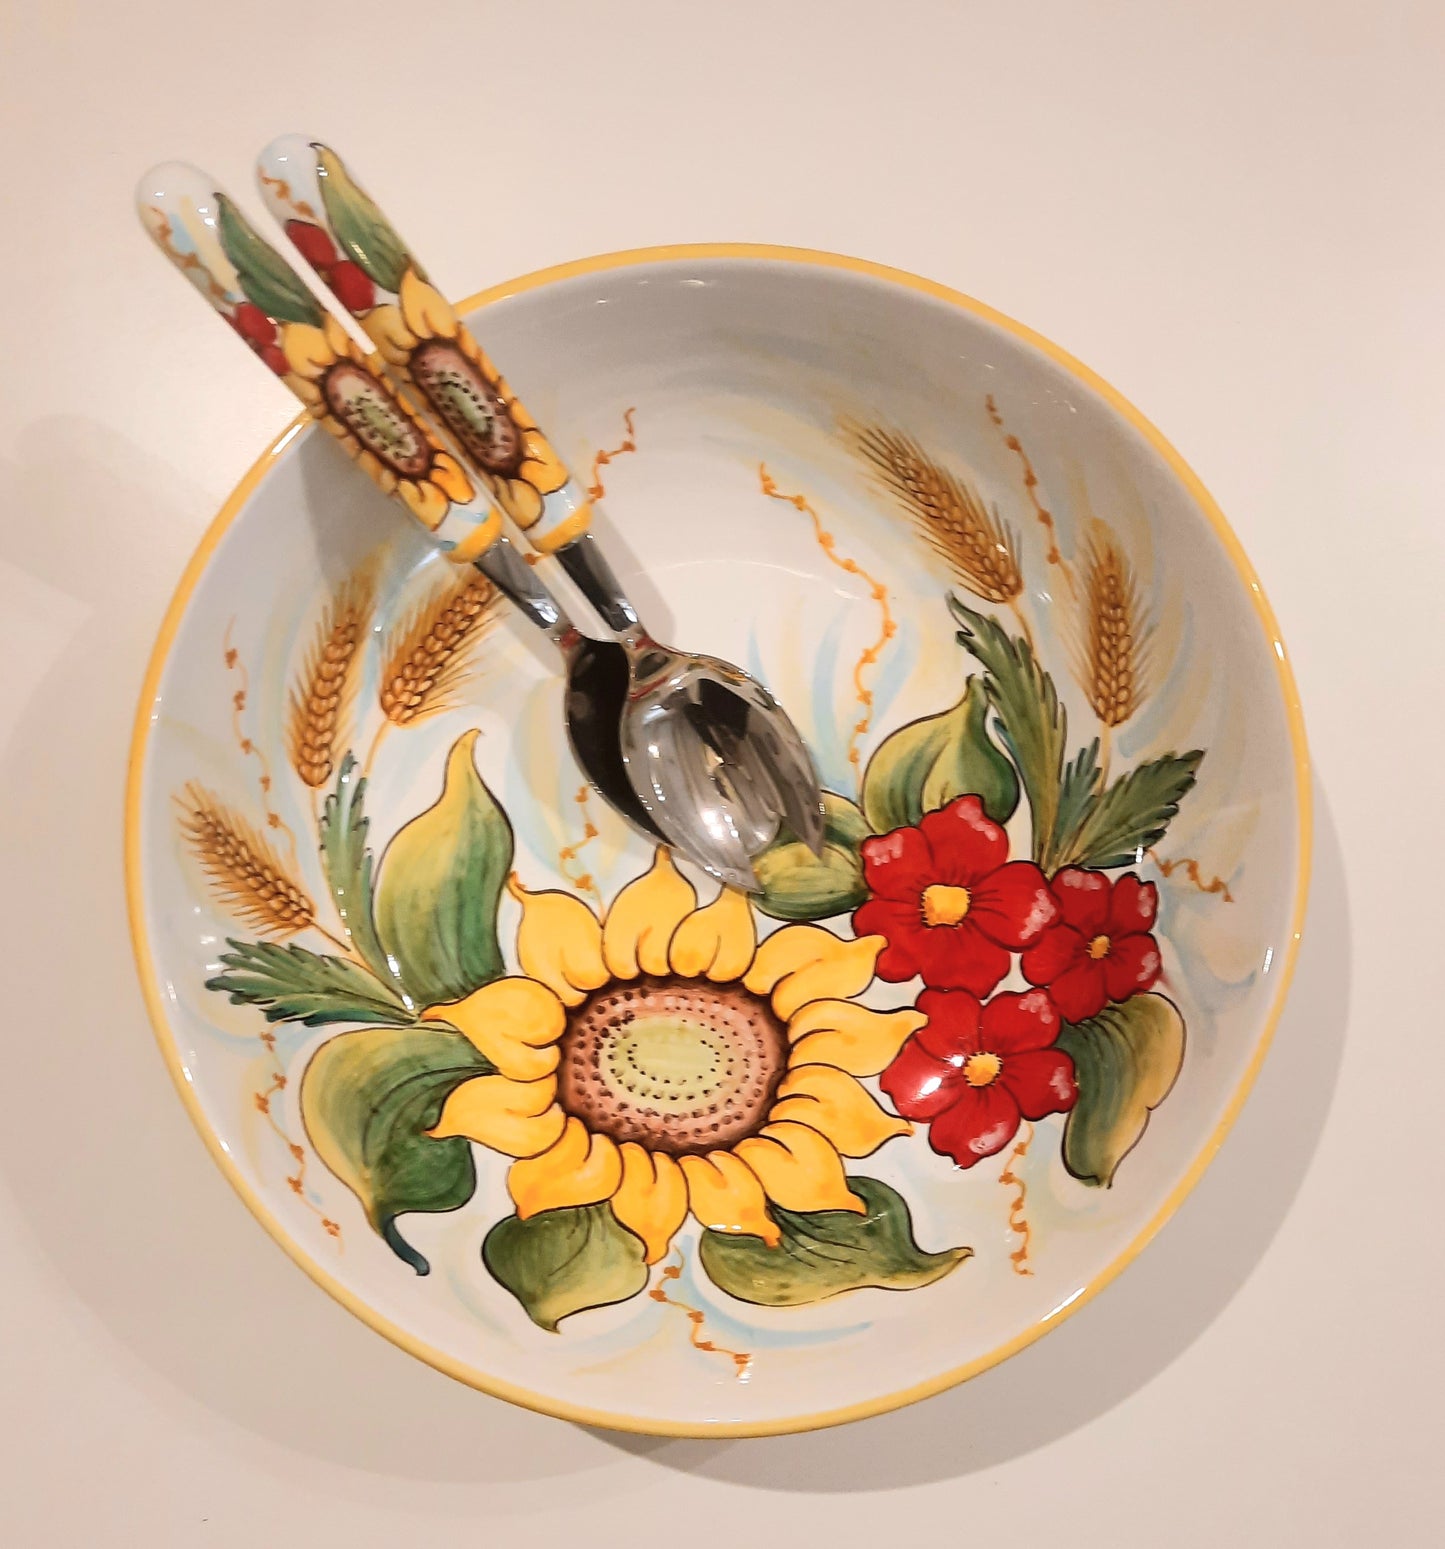 Ciotola cm 35 in ceramica dipinta a mano. Molto utile in cucina adatta per la pasta, la frutta e le vostre insalate. Non solo utile ma anche decorativa